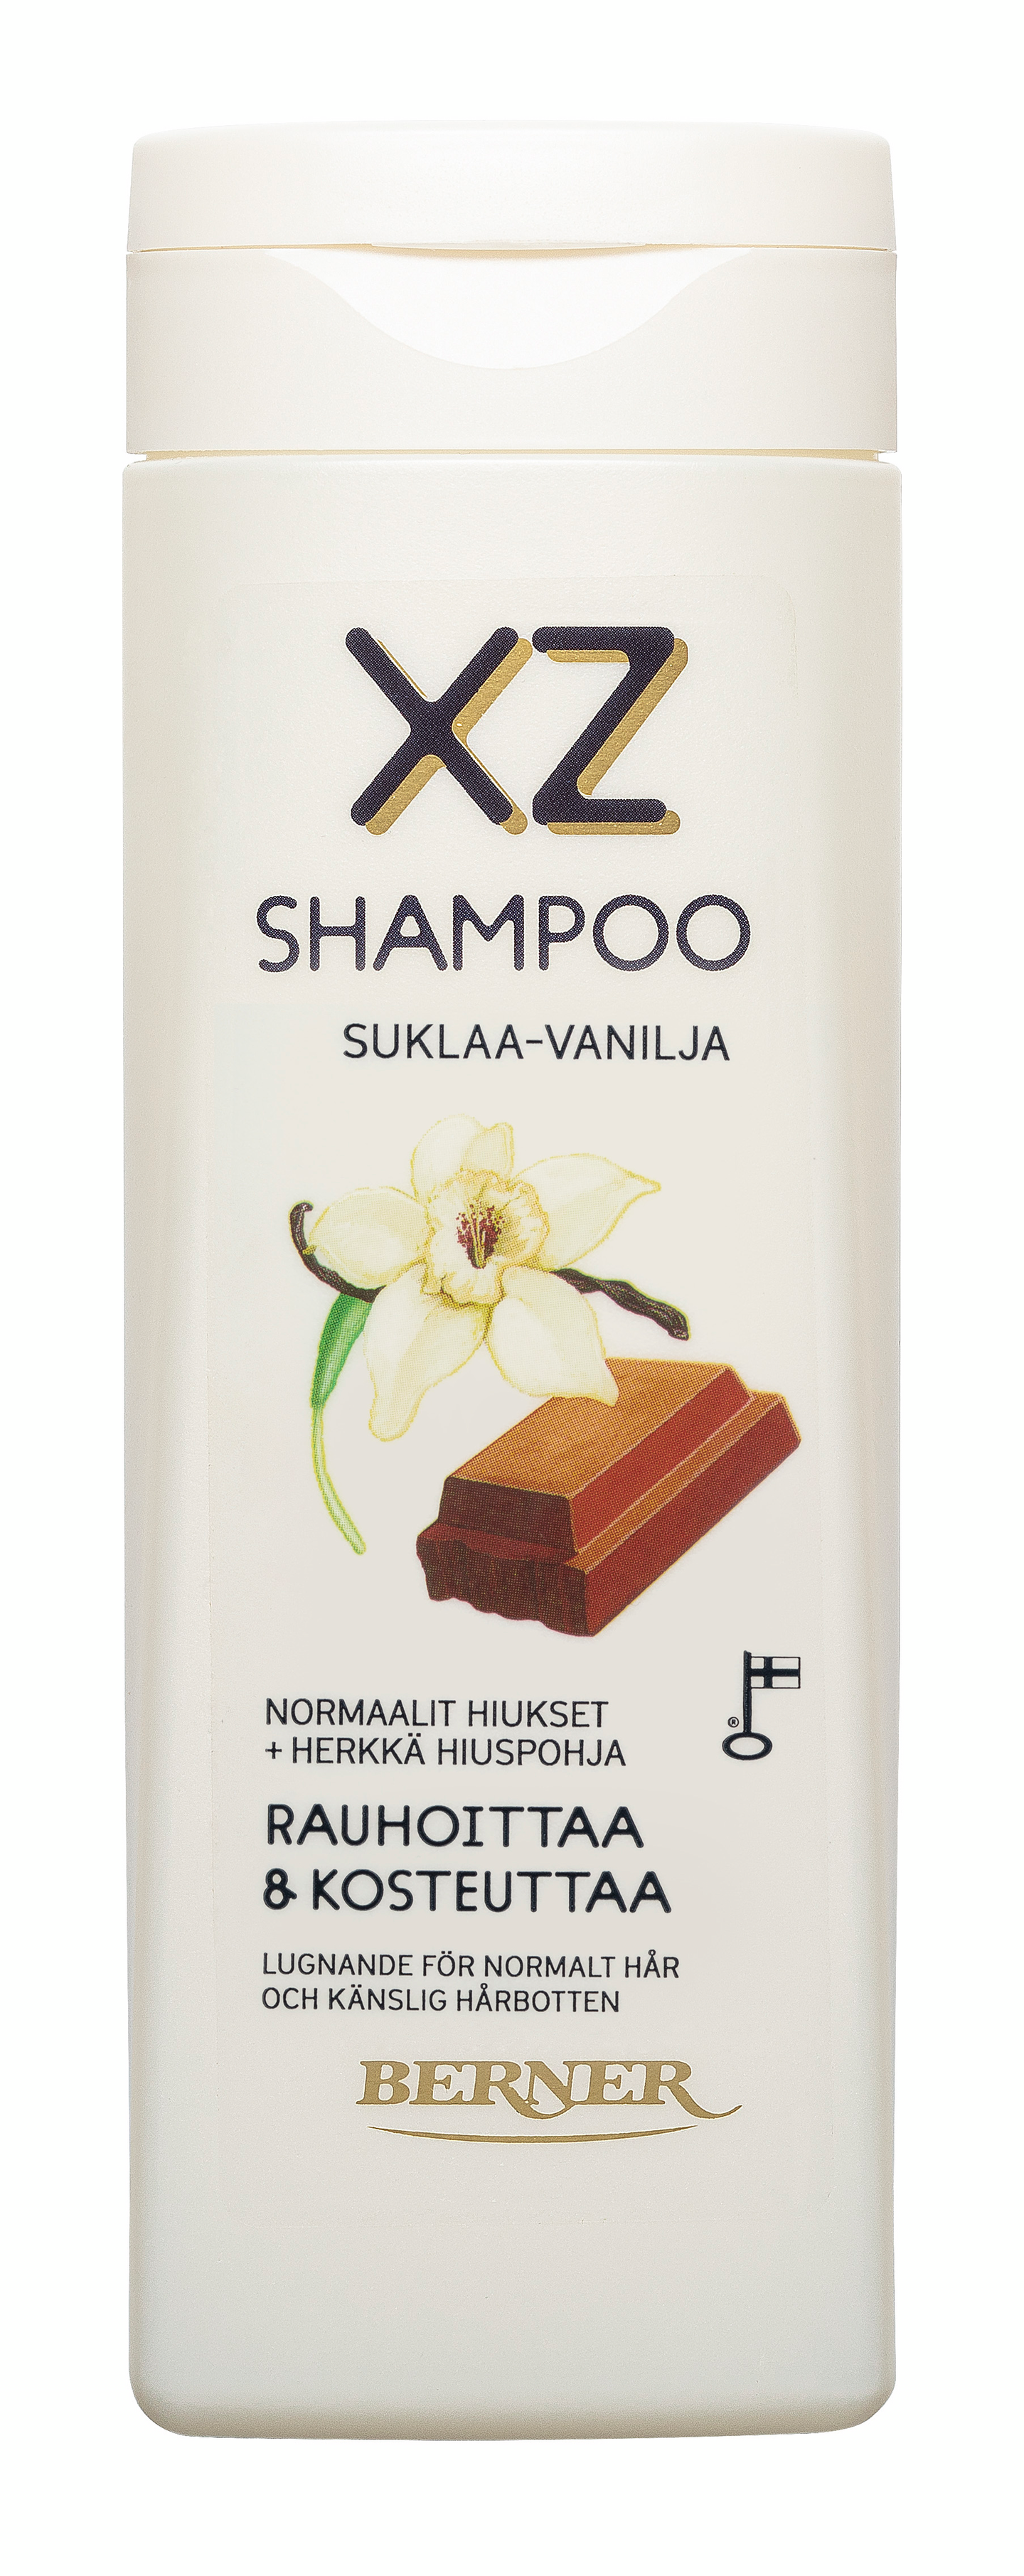 XZ shampoo 250ml Suklaa-Vanilja